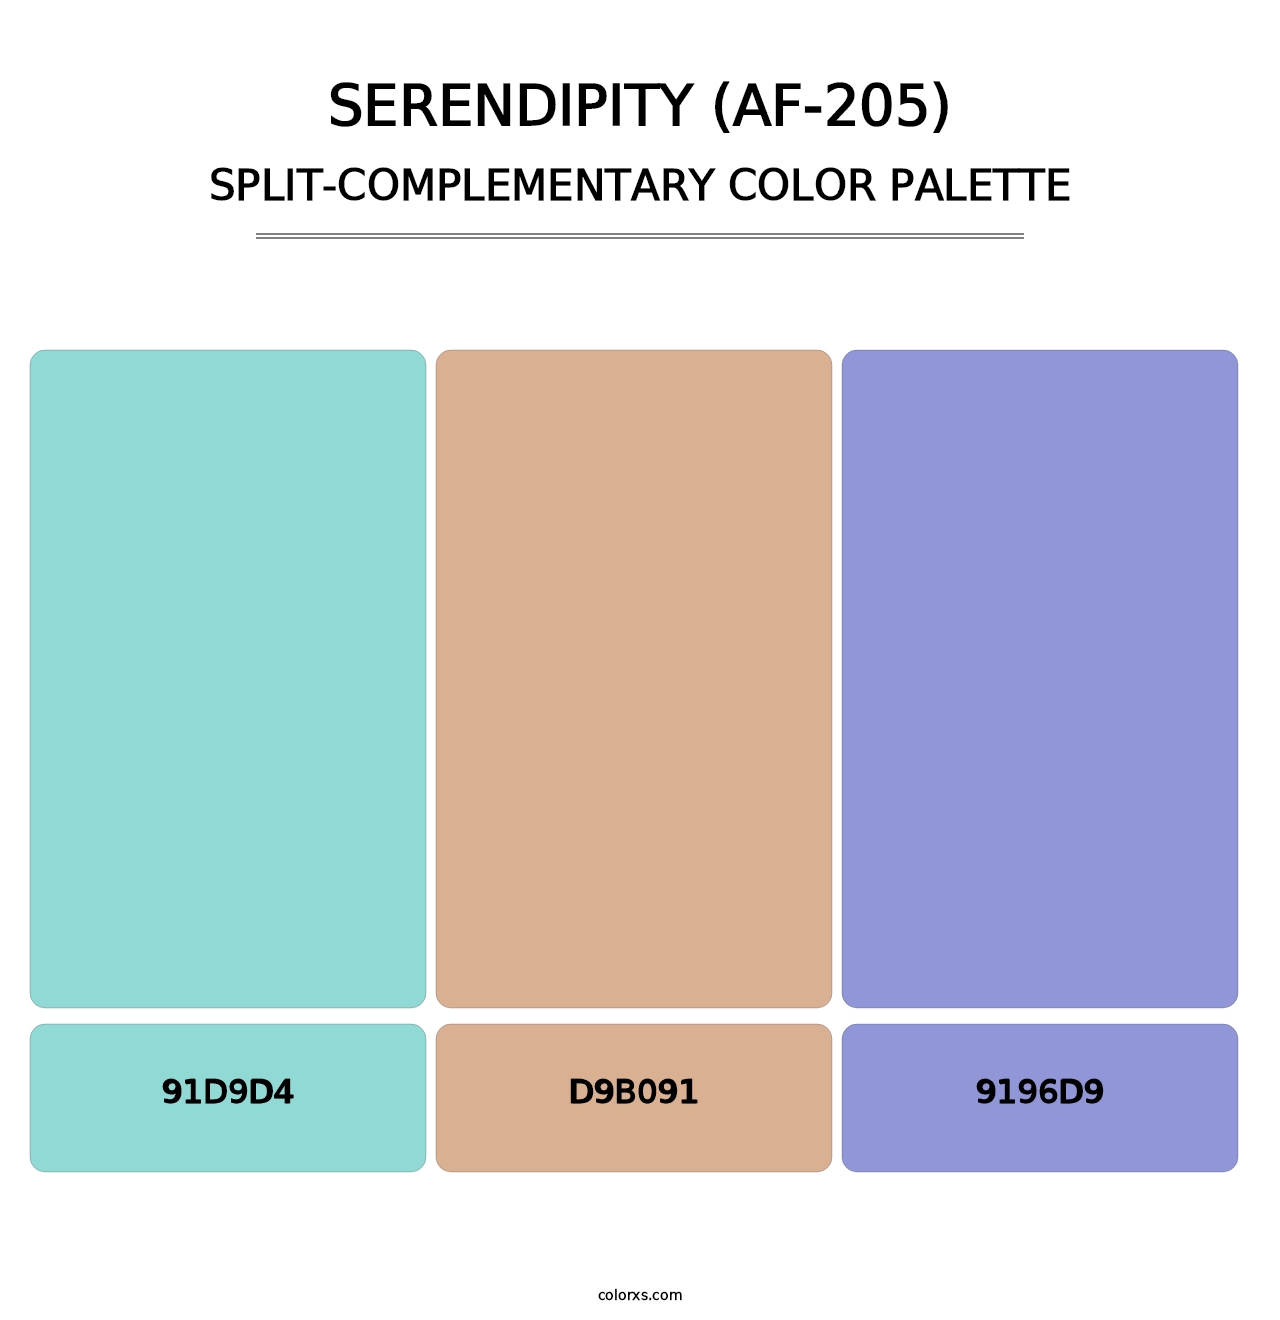 Serendipity (AF-205) - Split-Complementary Color Palette